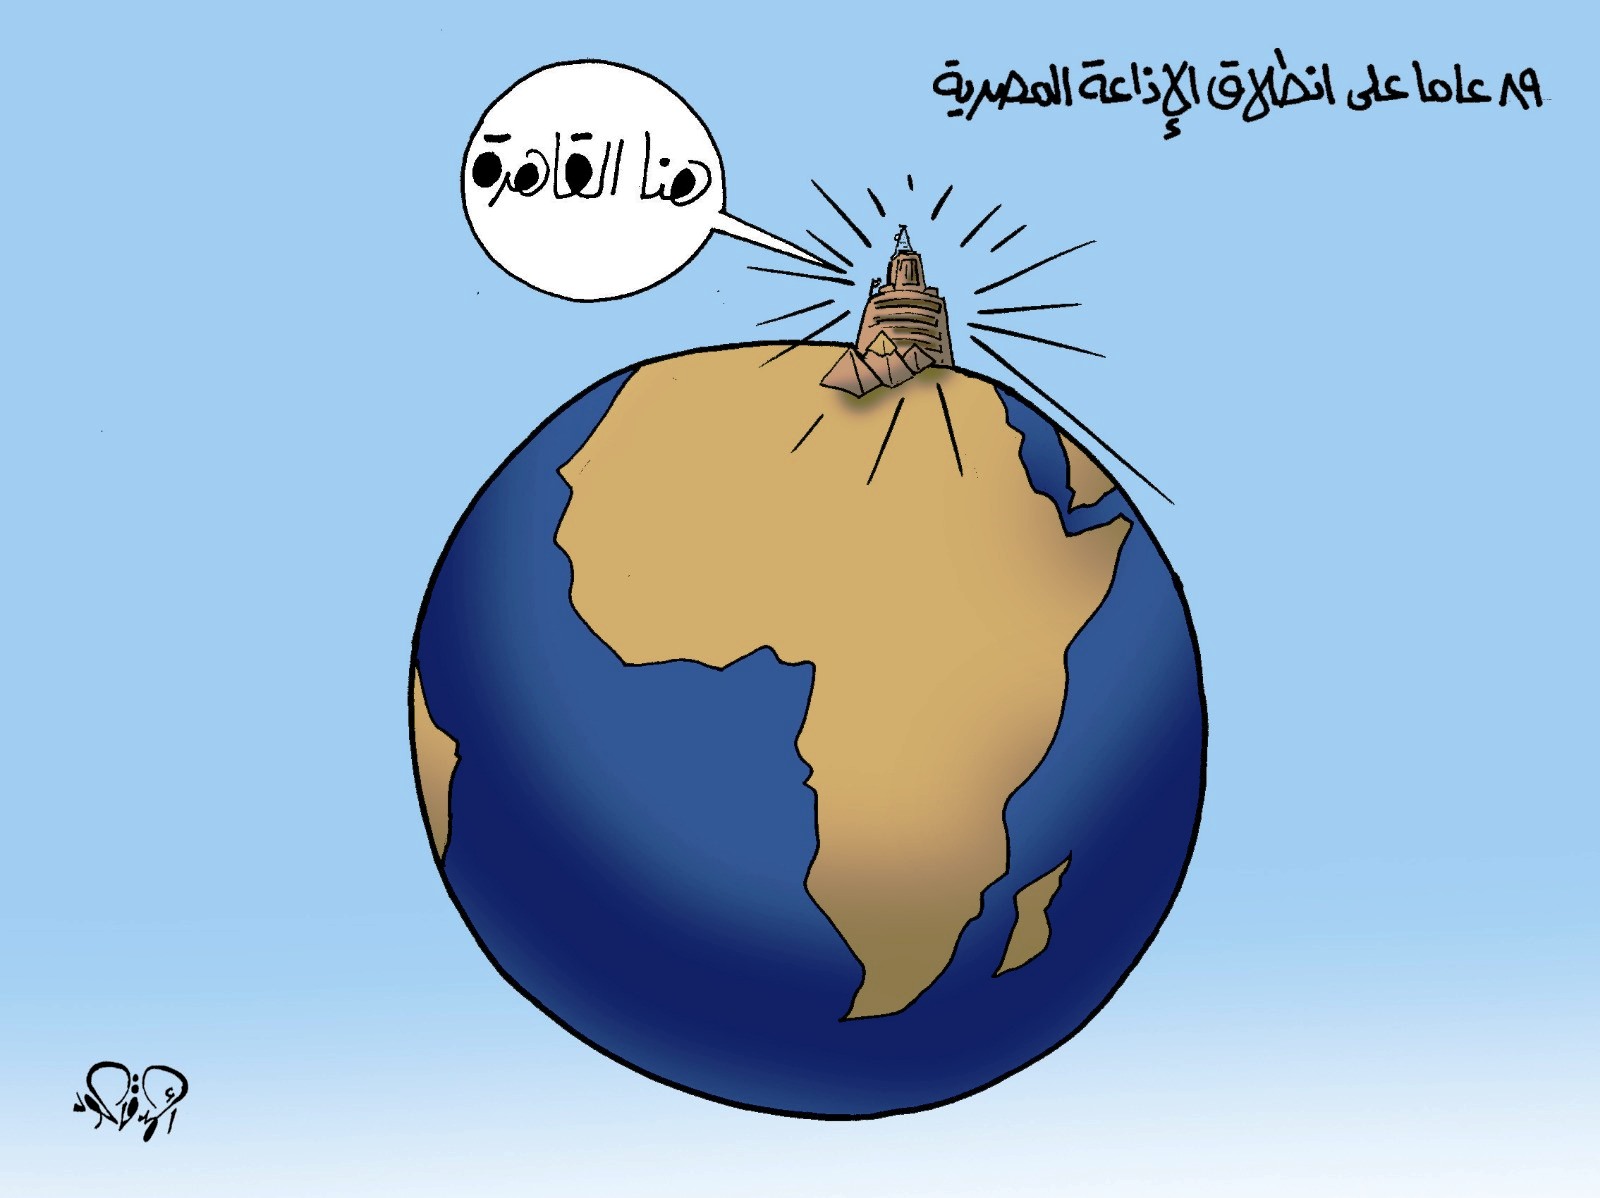 89 عامًا على انطلاق الإذاعة المصرية فى كاريكاتير اليوم السابع